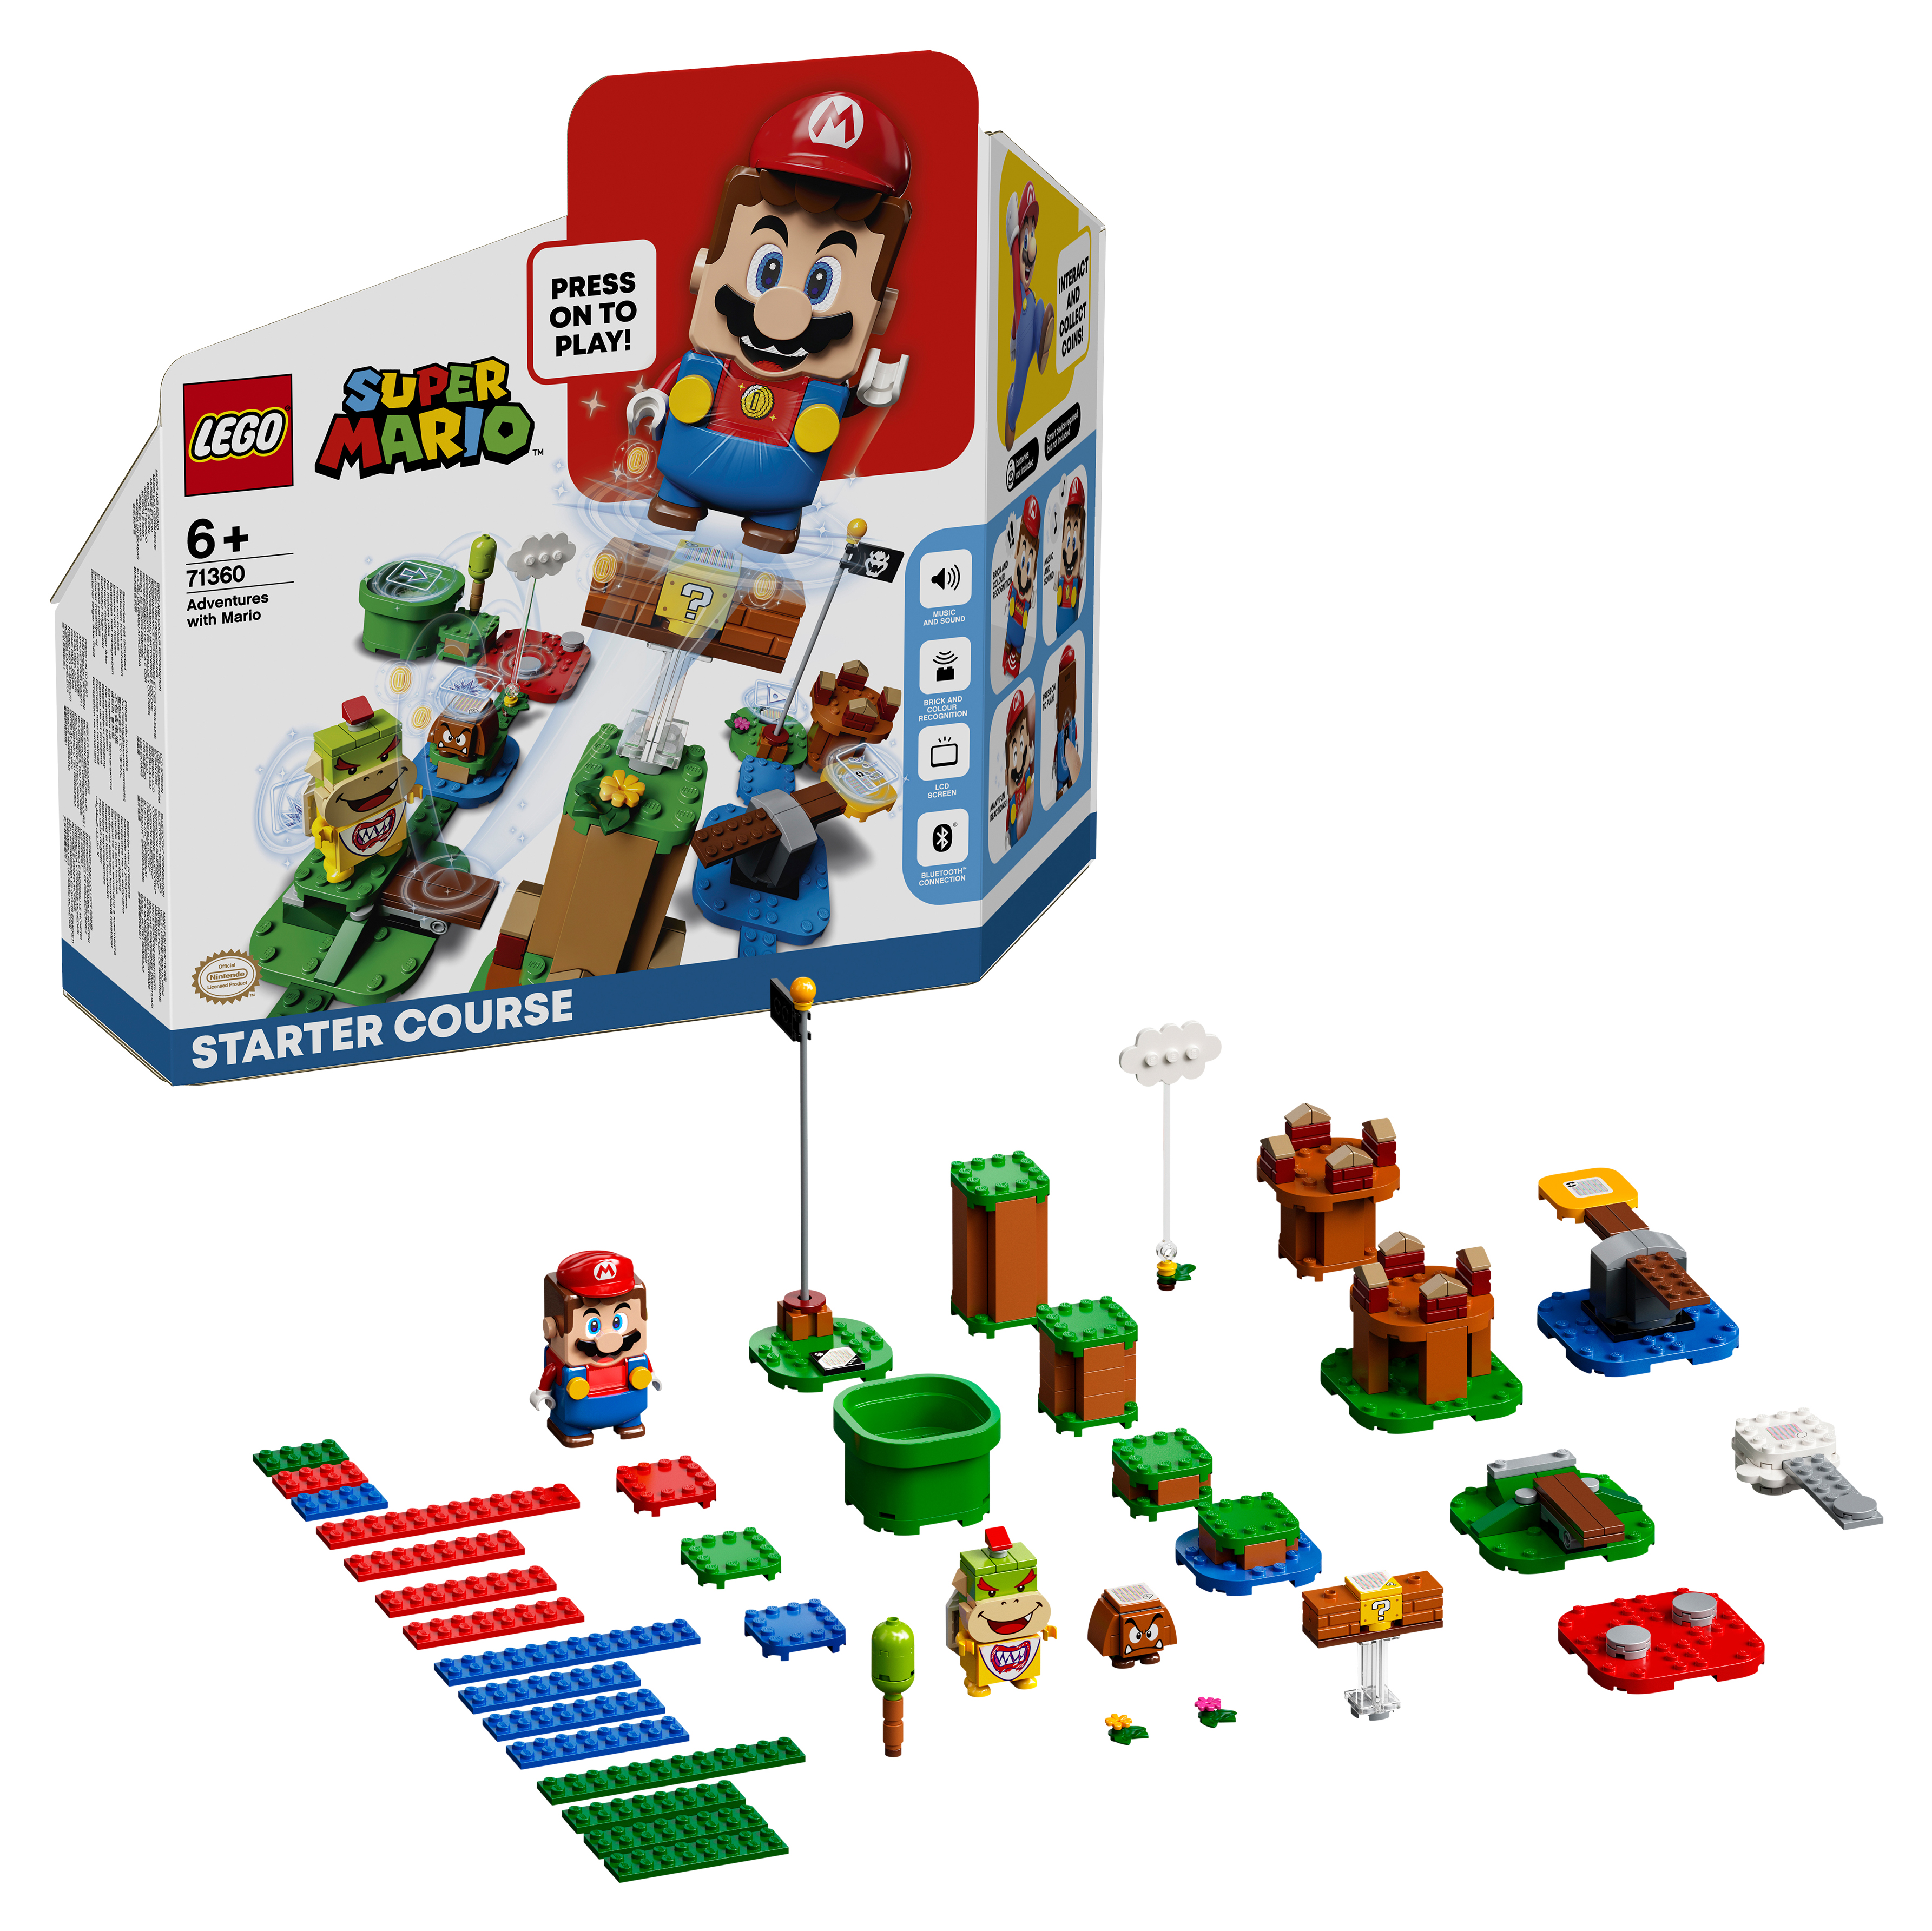 Конструктор LEGO Super Mario Приключения вместе с Марио Стартовый набор, 231 деталь, 71360